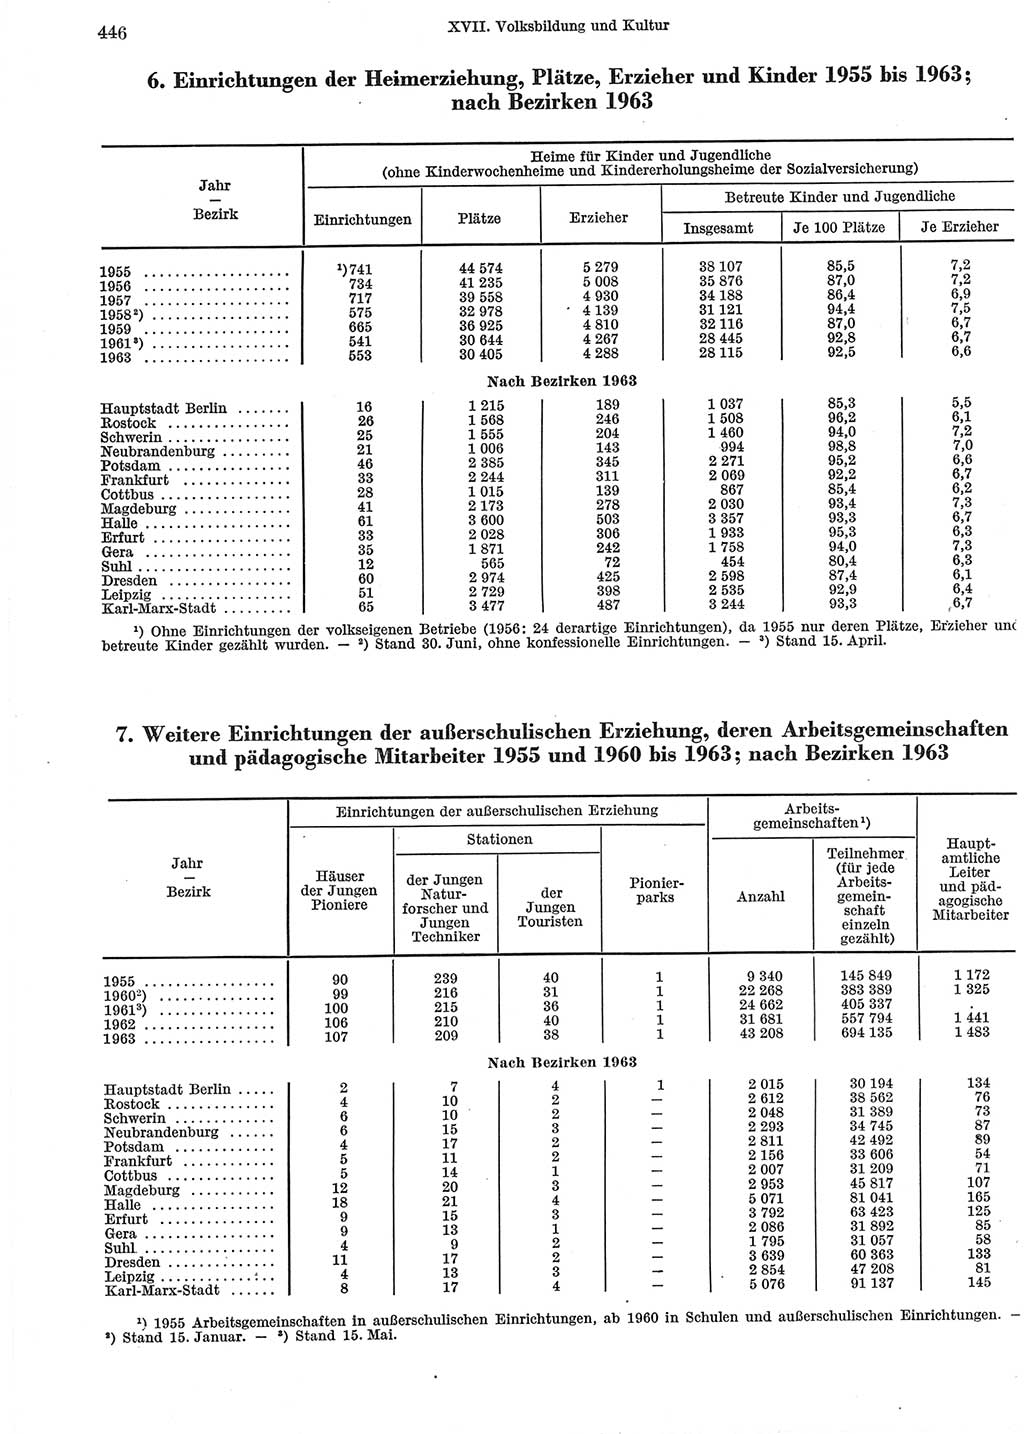 Statistisches Jahrbuch der Deutschen Demokratischen Republik (DDR) 1965, Seite 446 (Stat. Jb. DDR 1965, S. 446)